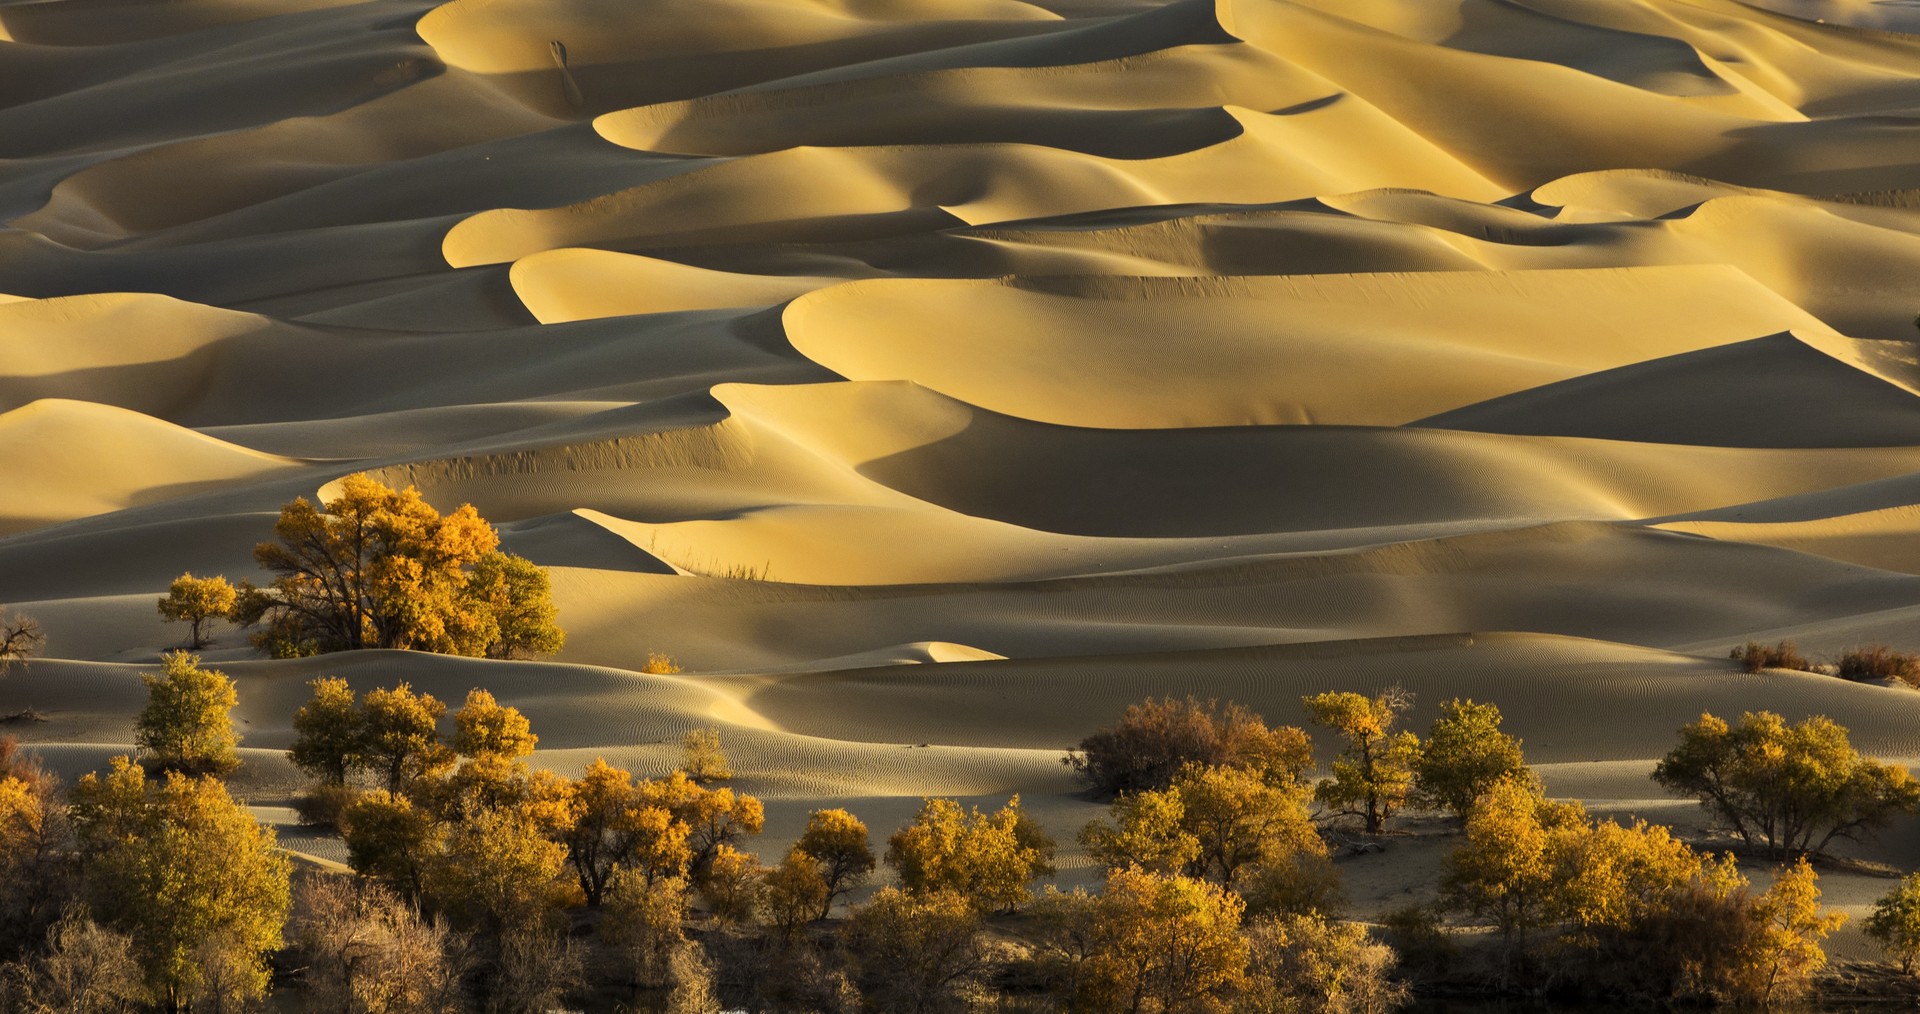 中国第一大沙漠,面积相当于整个德国